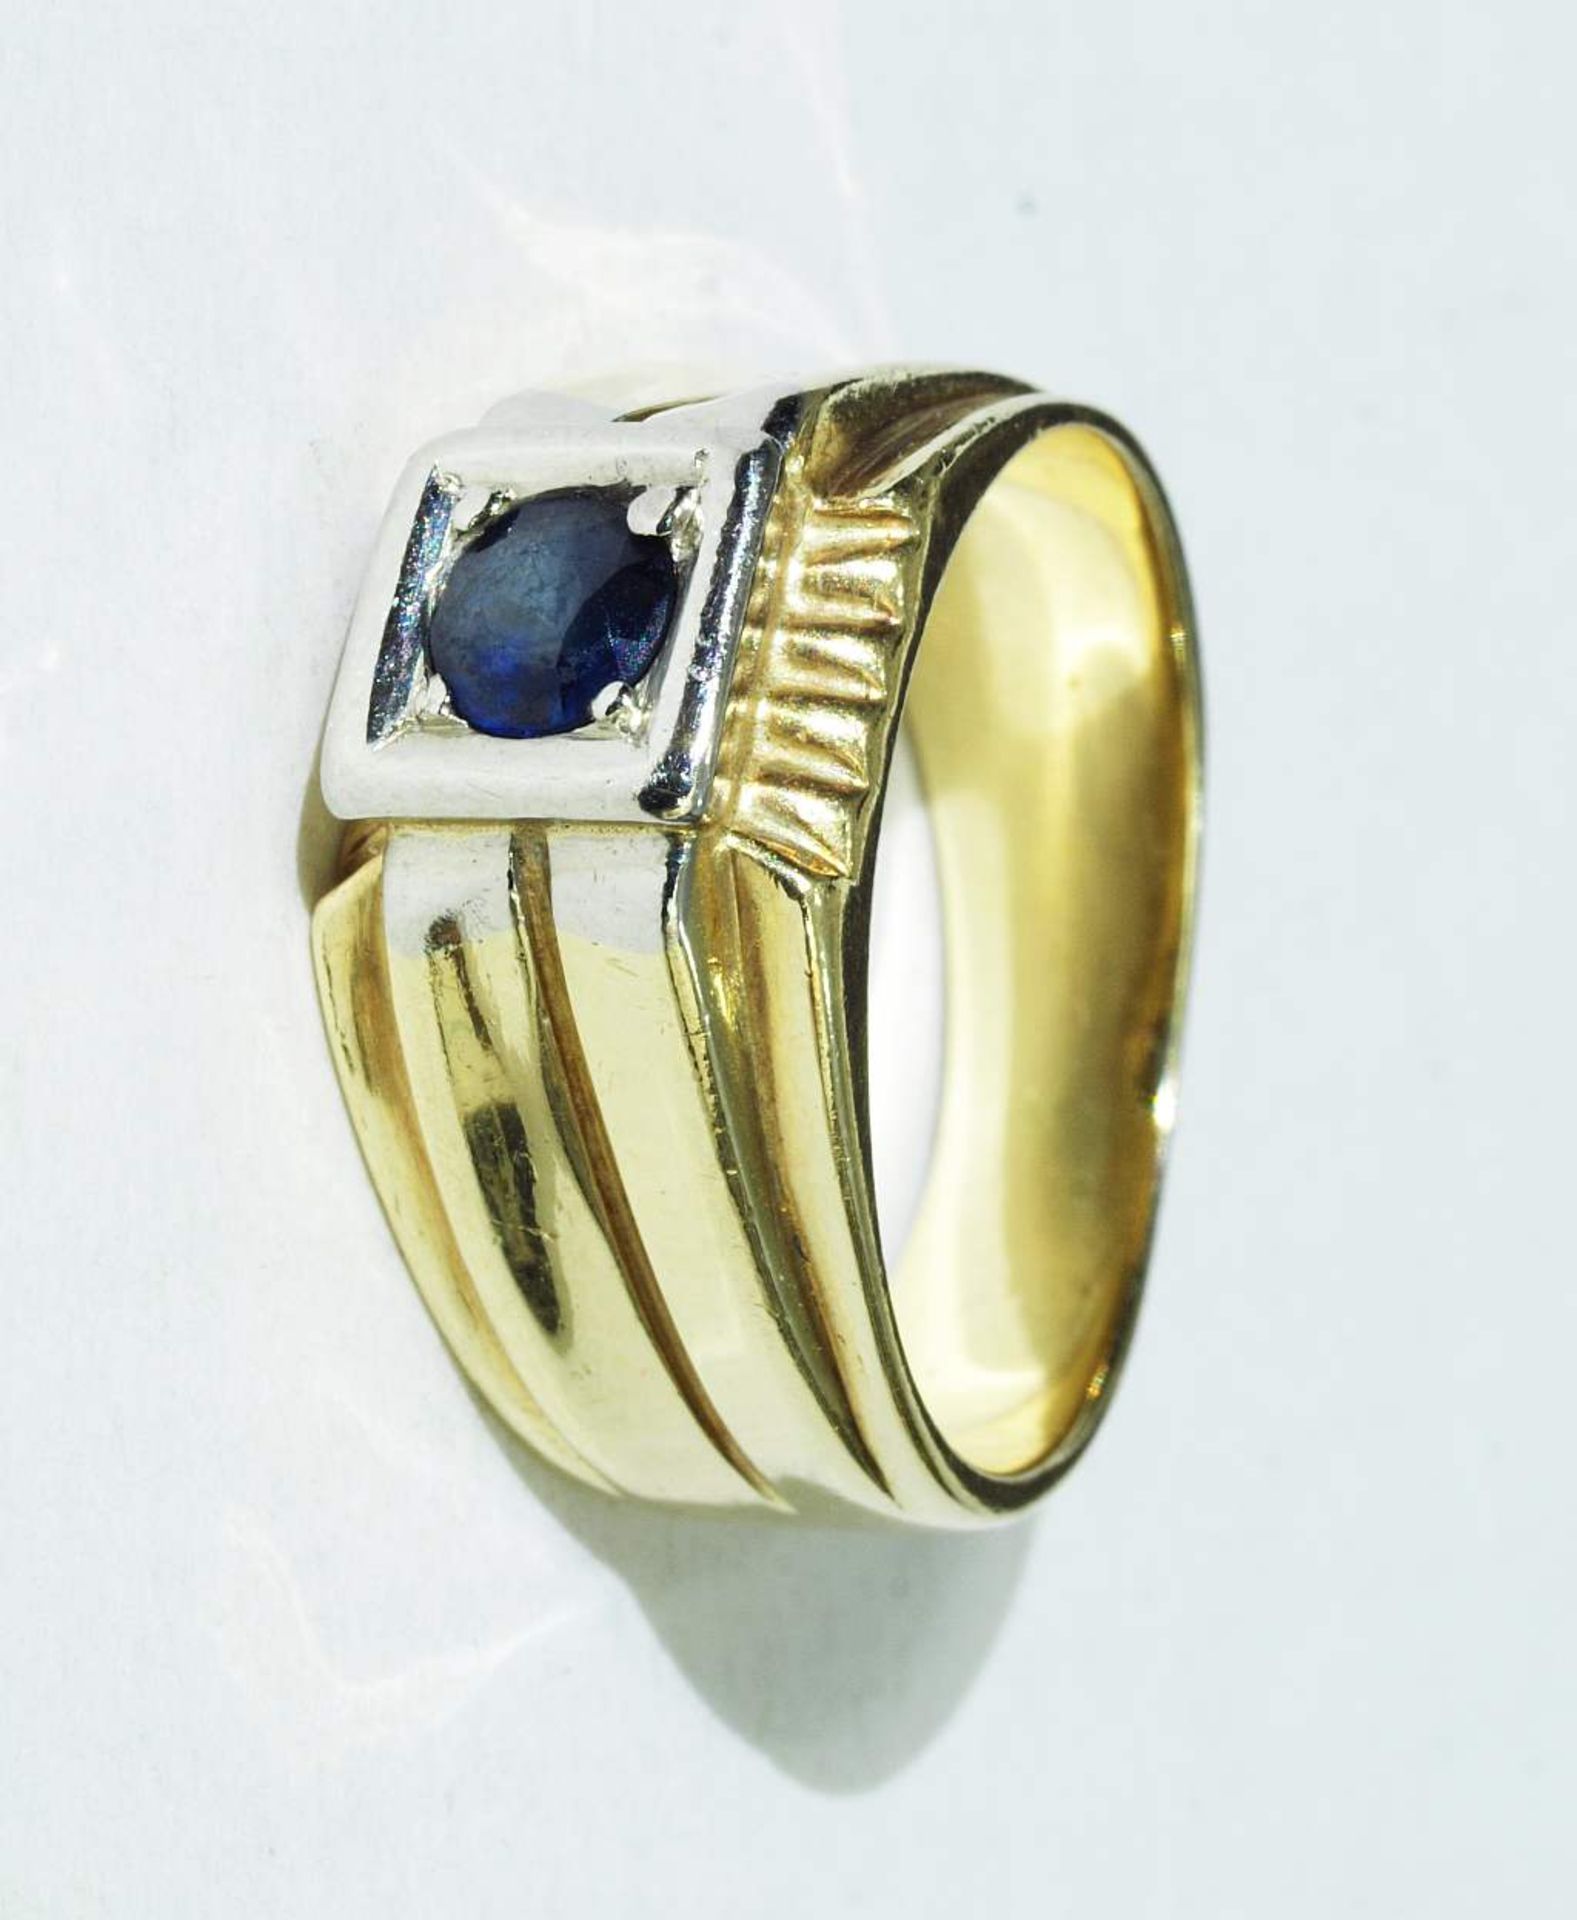 Ring mit Saphir. Ring mit Saphir. 585er Gelbgold. Ringschiene massiv, Ringgröße 58, ca. 10,5 Gramm. - Bild 2 aus 4